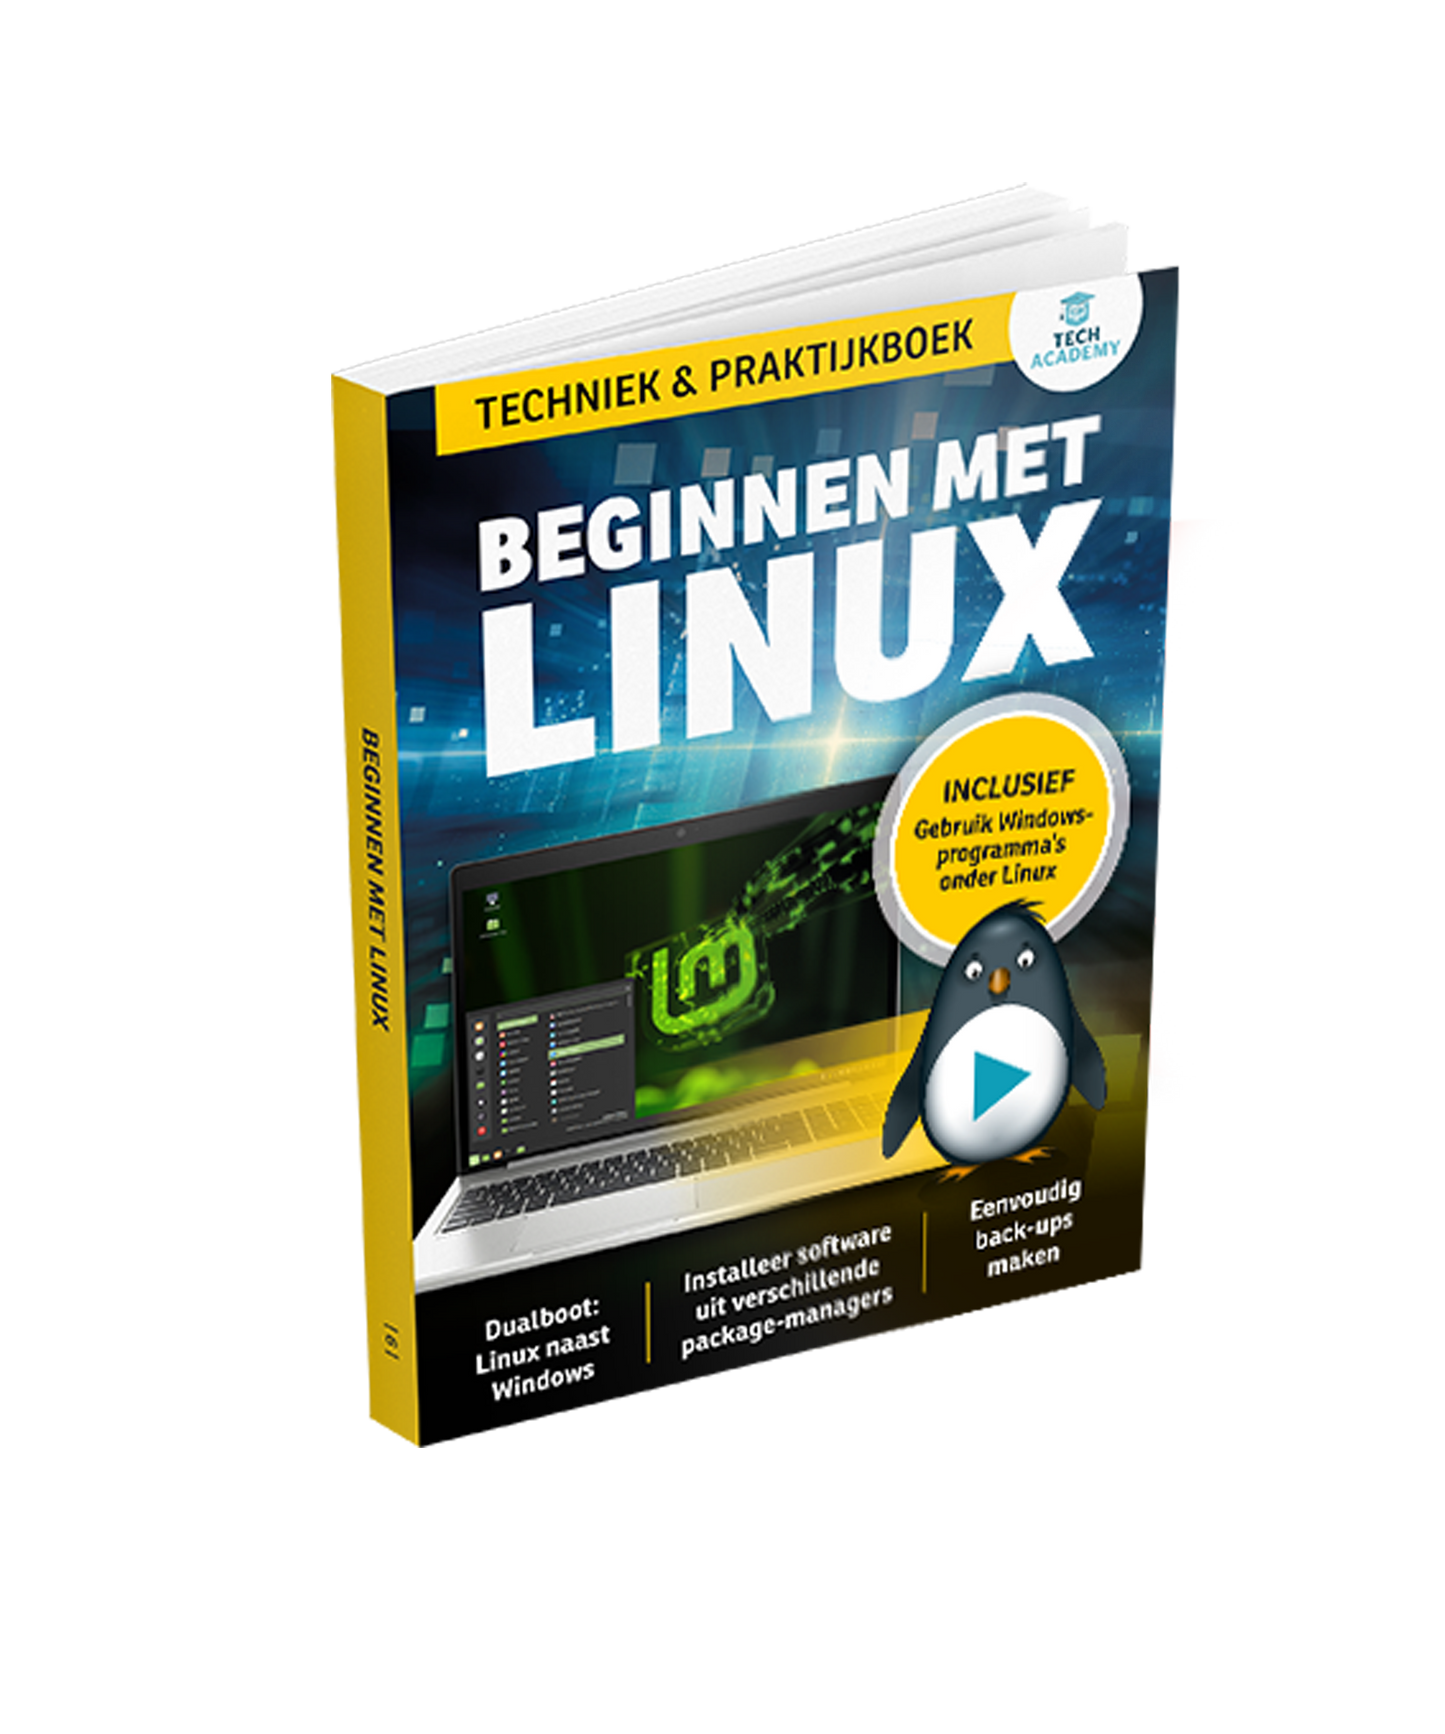 Beginnen met Linux